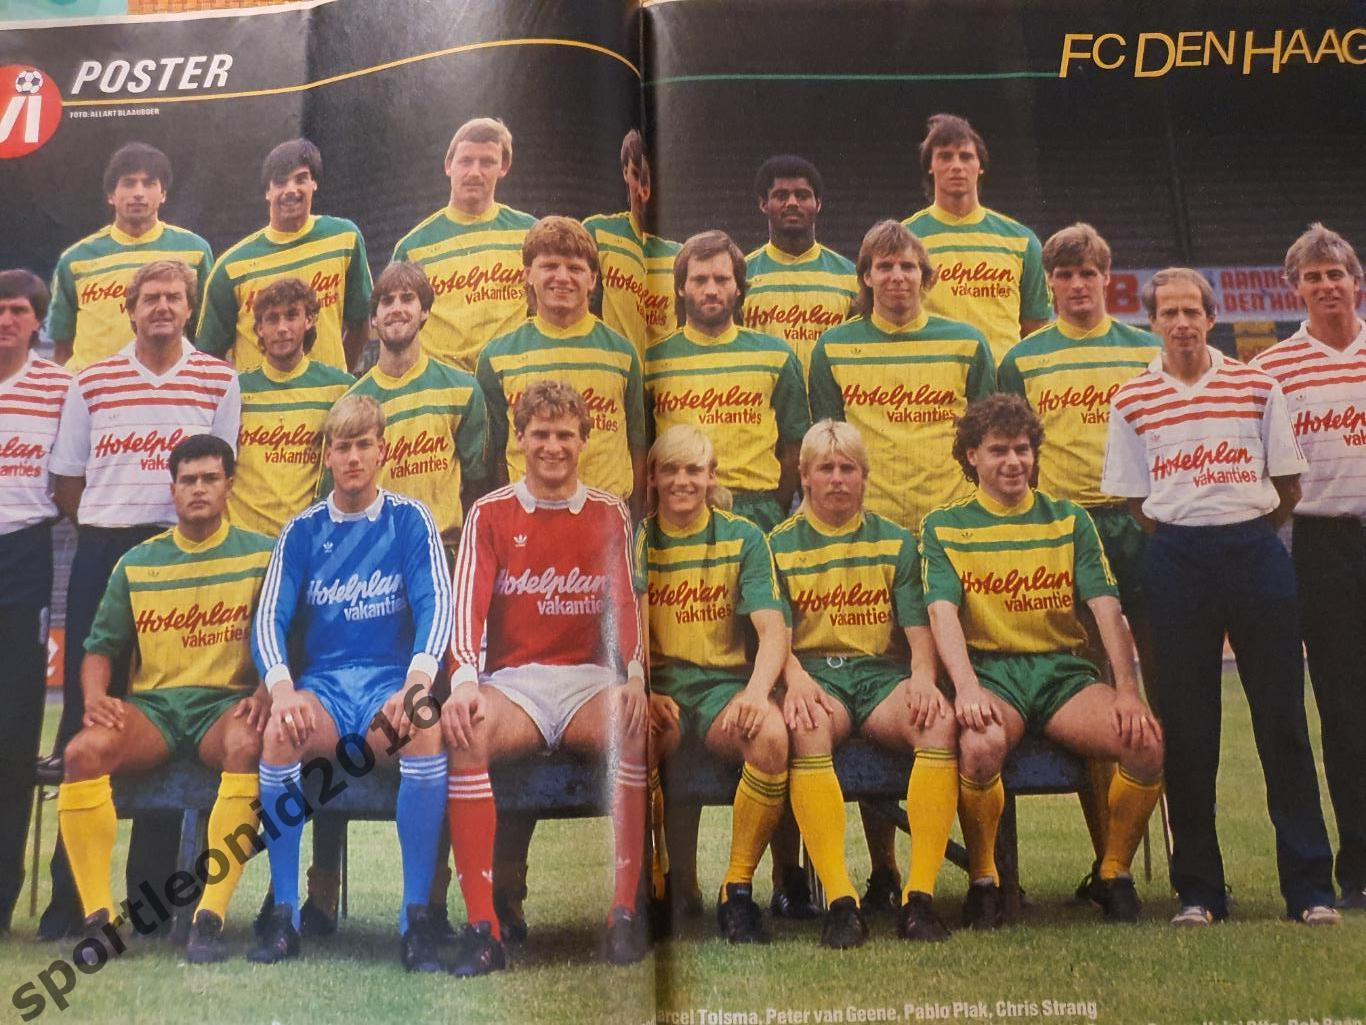 Voetbal International 1985 года выпуска.14 журналов.1 5